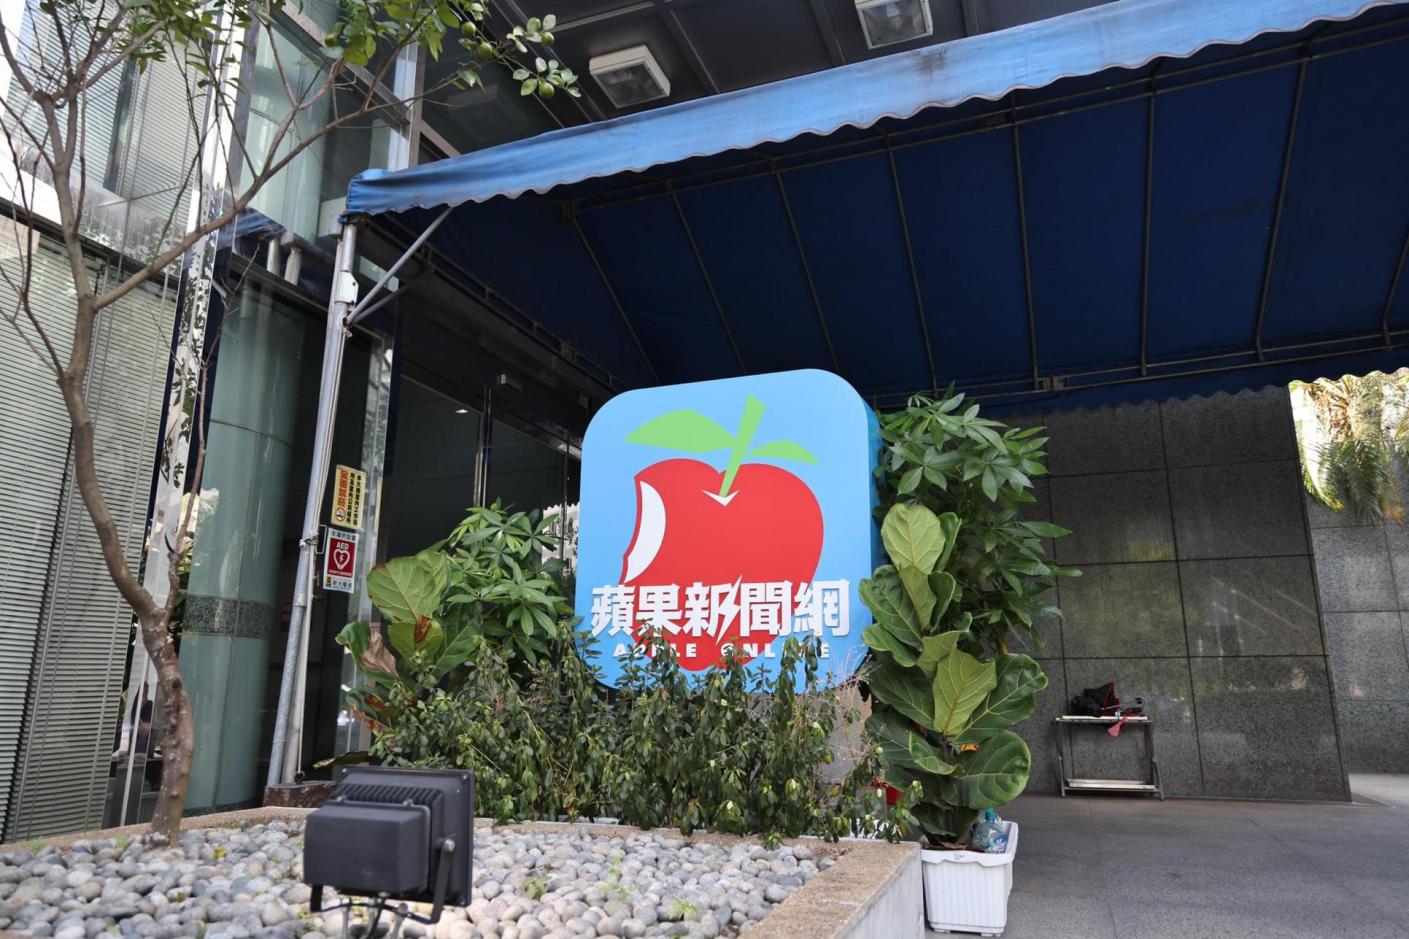 台灣《蘋果新聞網》8月底已停止更新，先前交易爭議引發黎智英特助跨海提告。資料照片